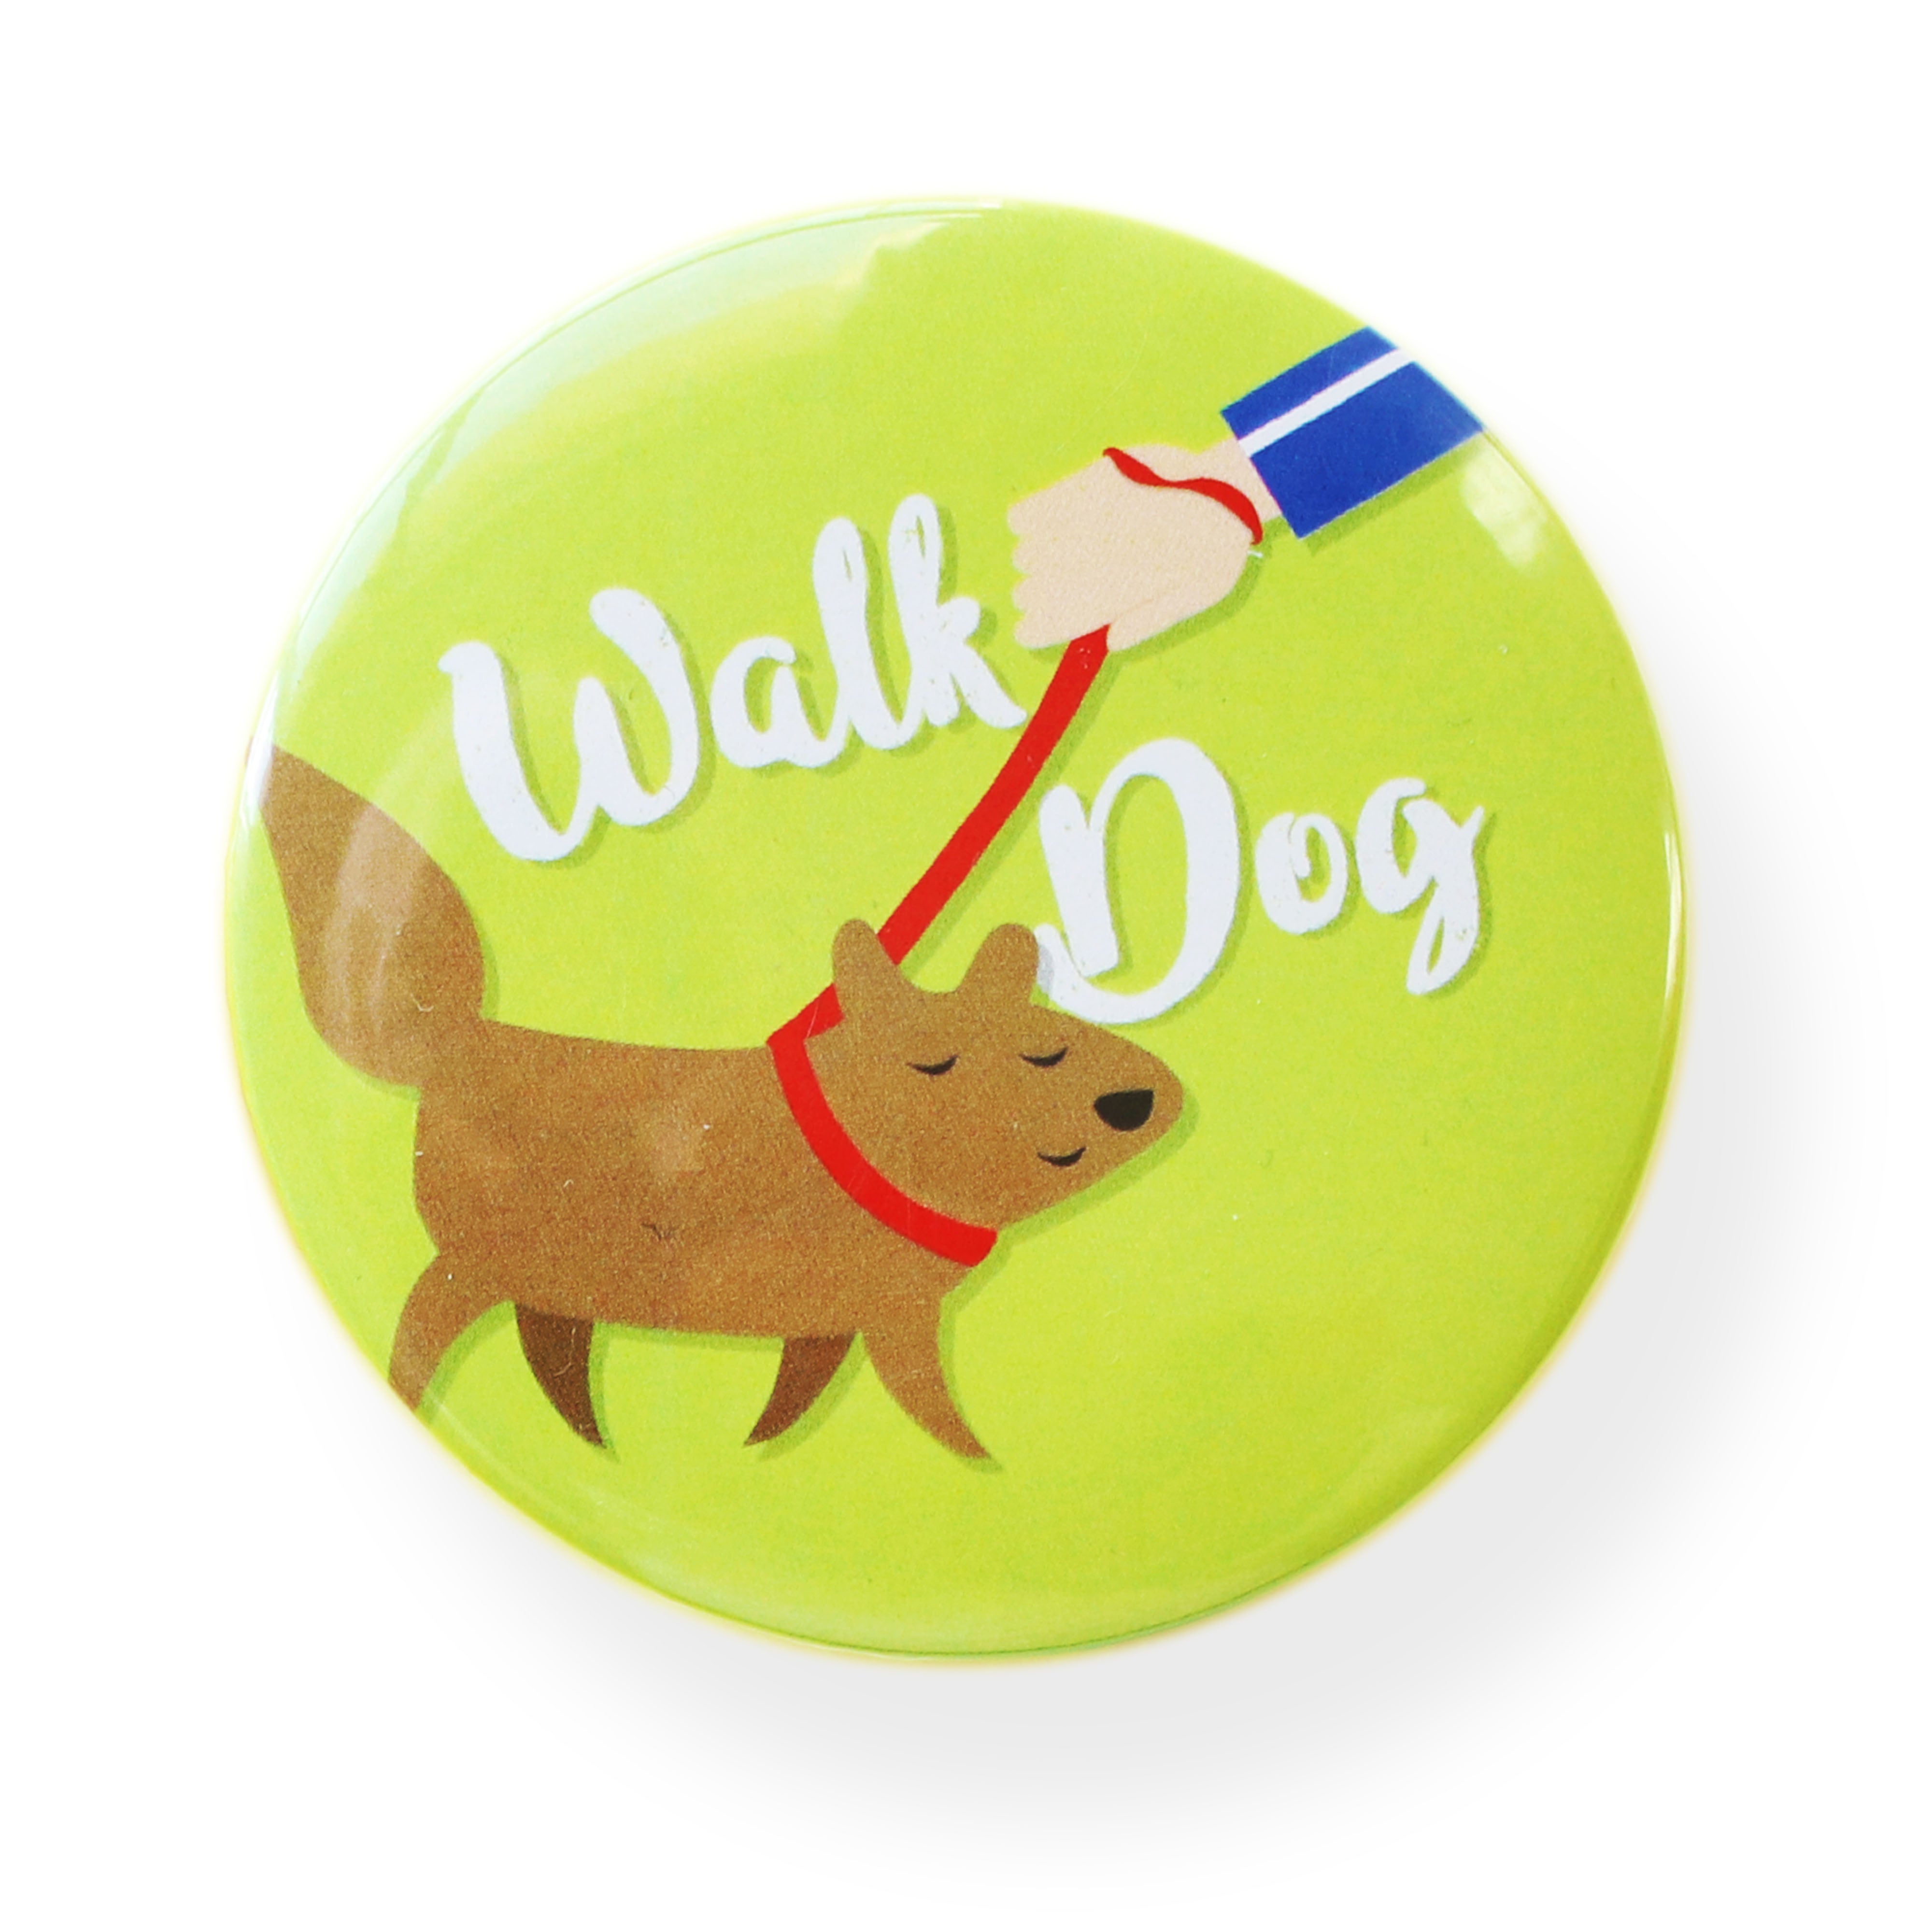 Walk Dog Magnet - مغناطيس تمشية الكلب